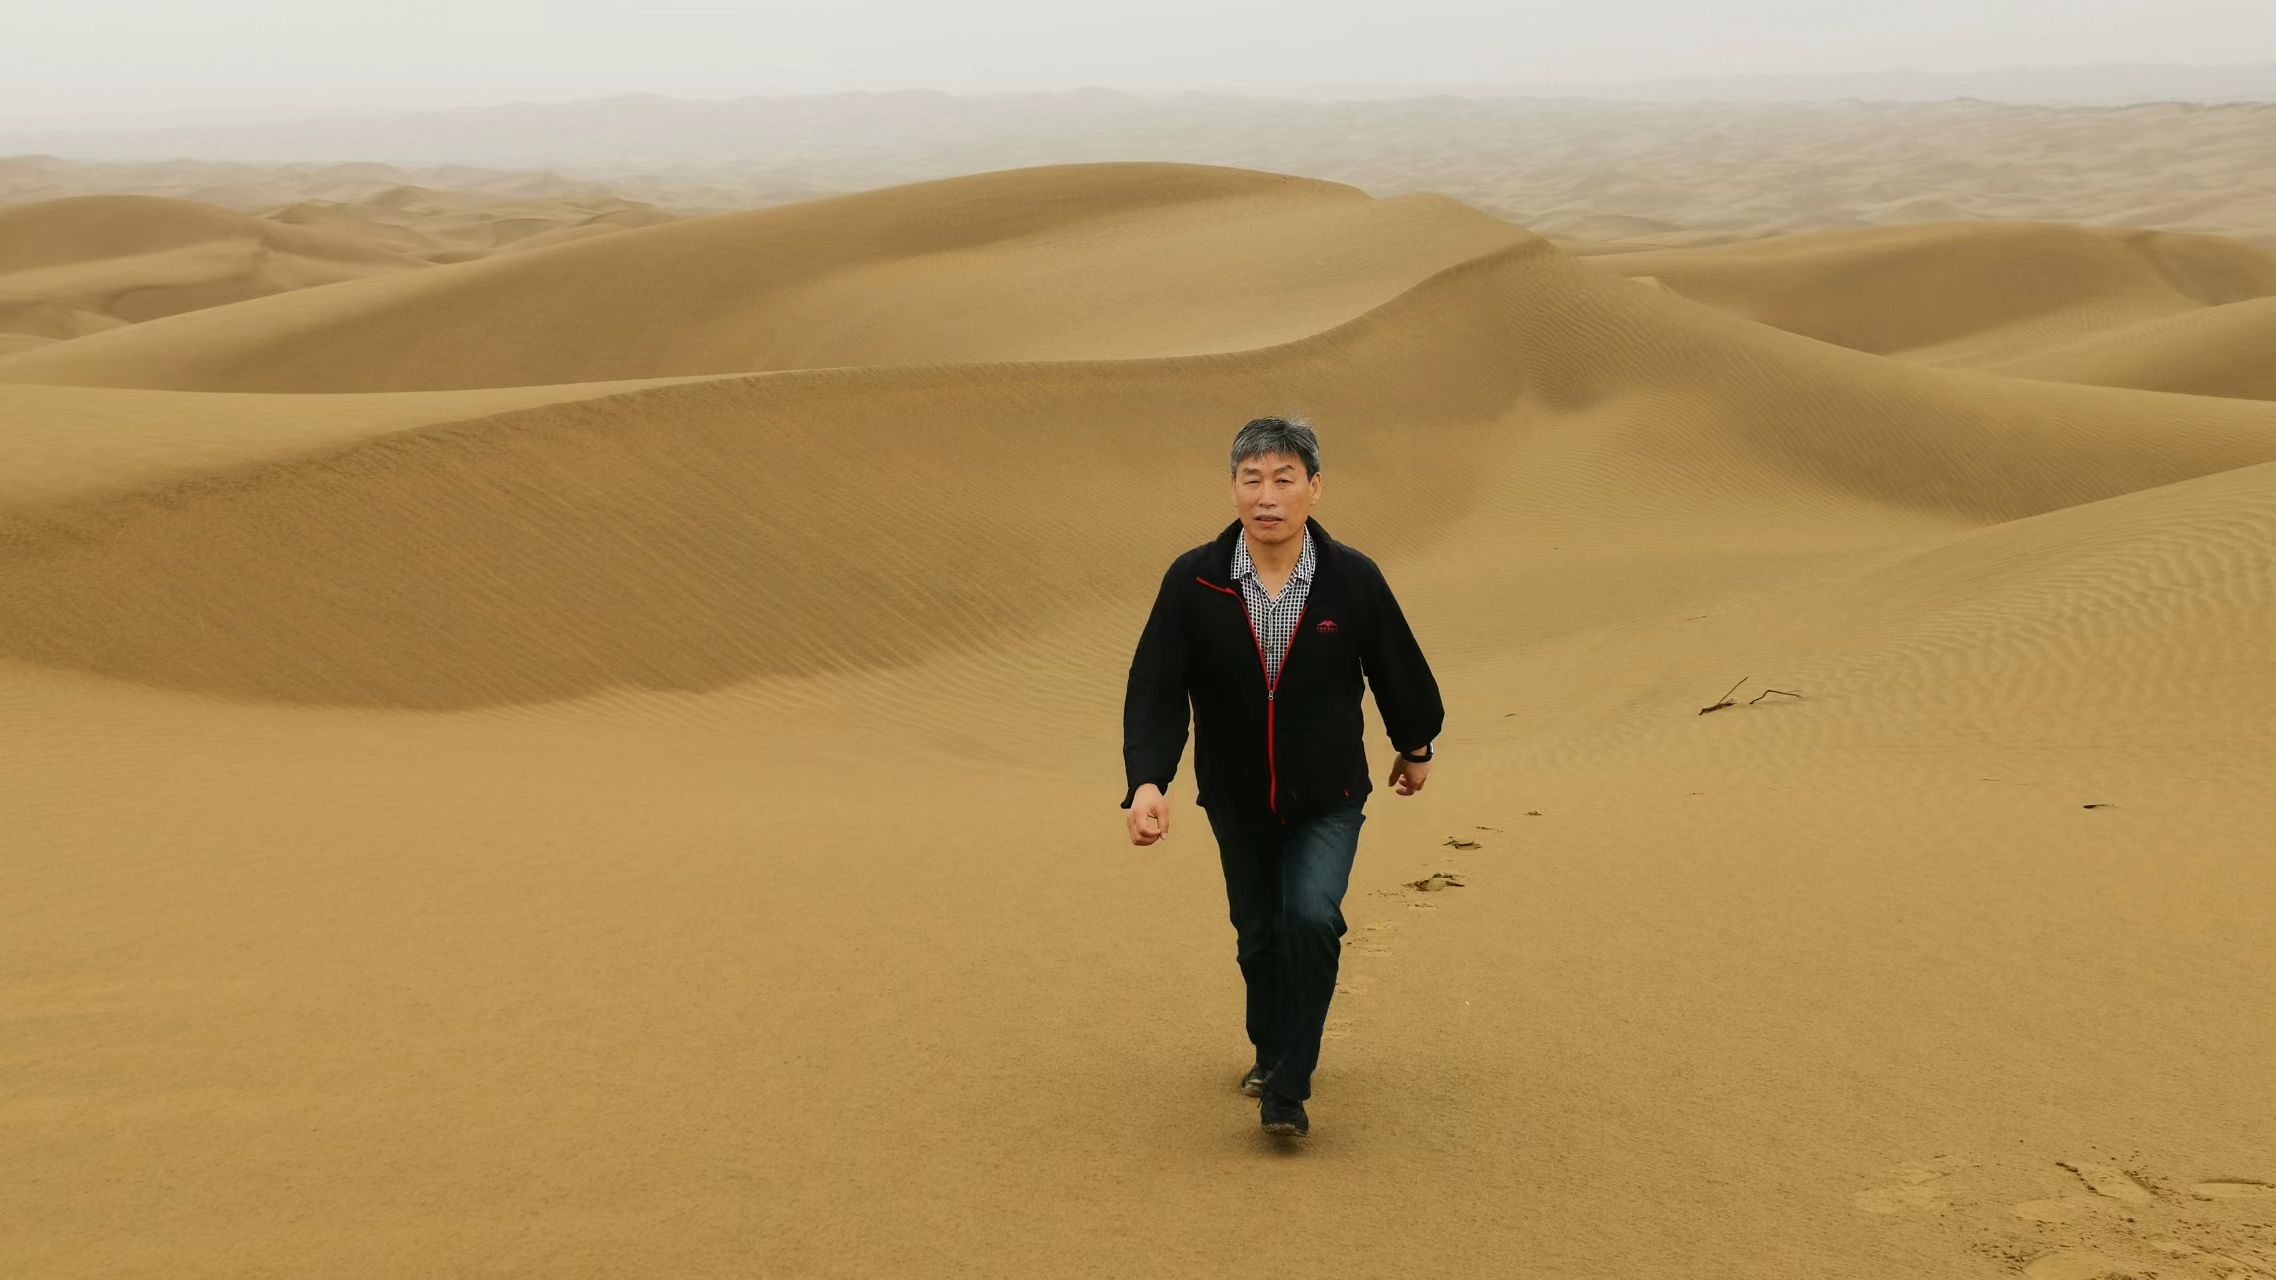 Lei Jiaqiang in the Taklimakan Desert, northwest China's Xinjiang Uygur Autonomous Region, August 19, 2019. /Courtesy of Lei Jiaqiang